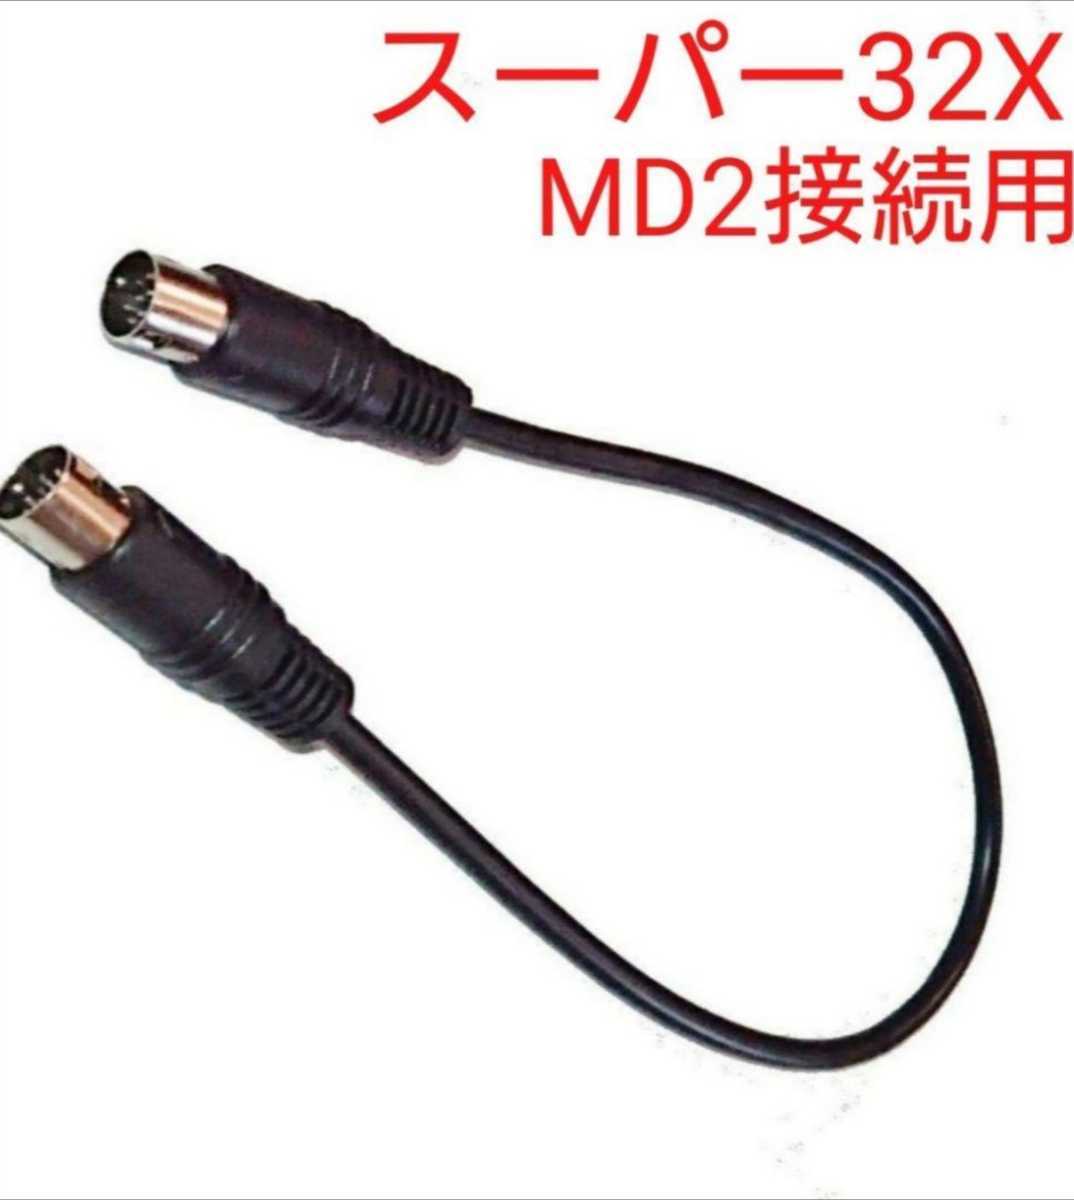 送料無料 スーパー32X MD2用リンクケーブル 接続ケーブル メガドライブ2用 ステレオ音声出力の画像1